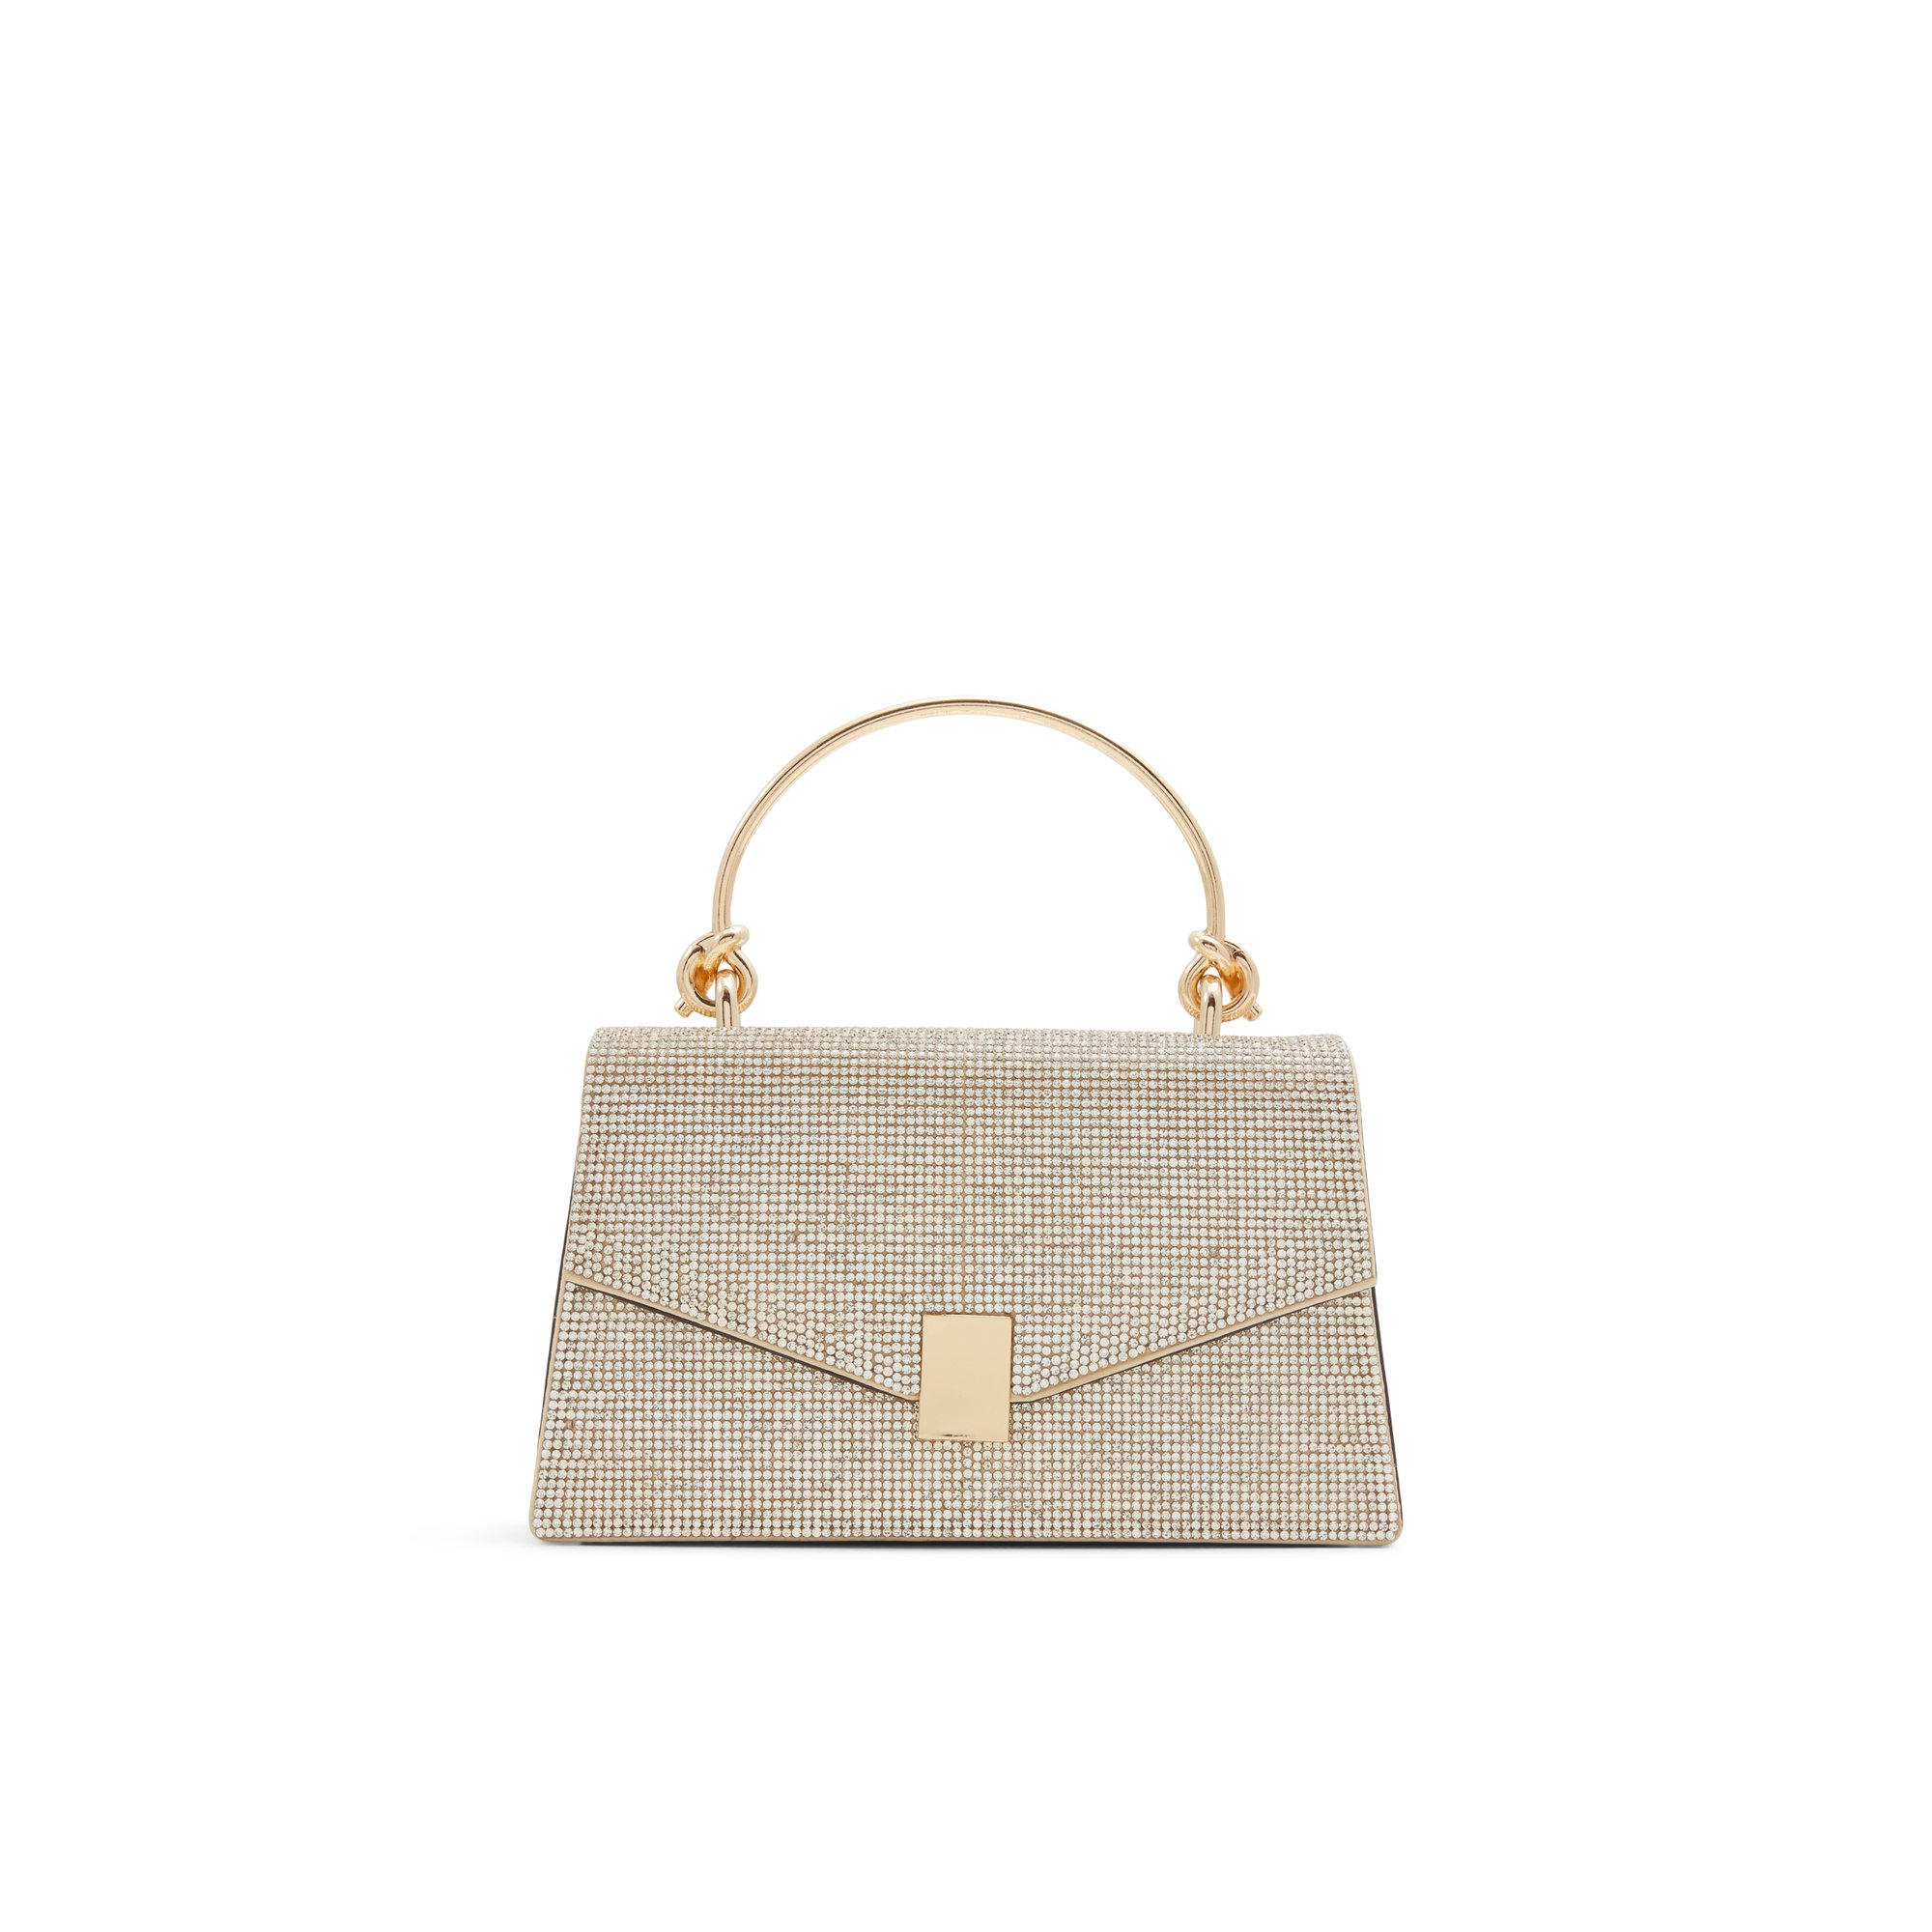 ALDO Miramax - Women's Handbags Top Handle - Gold